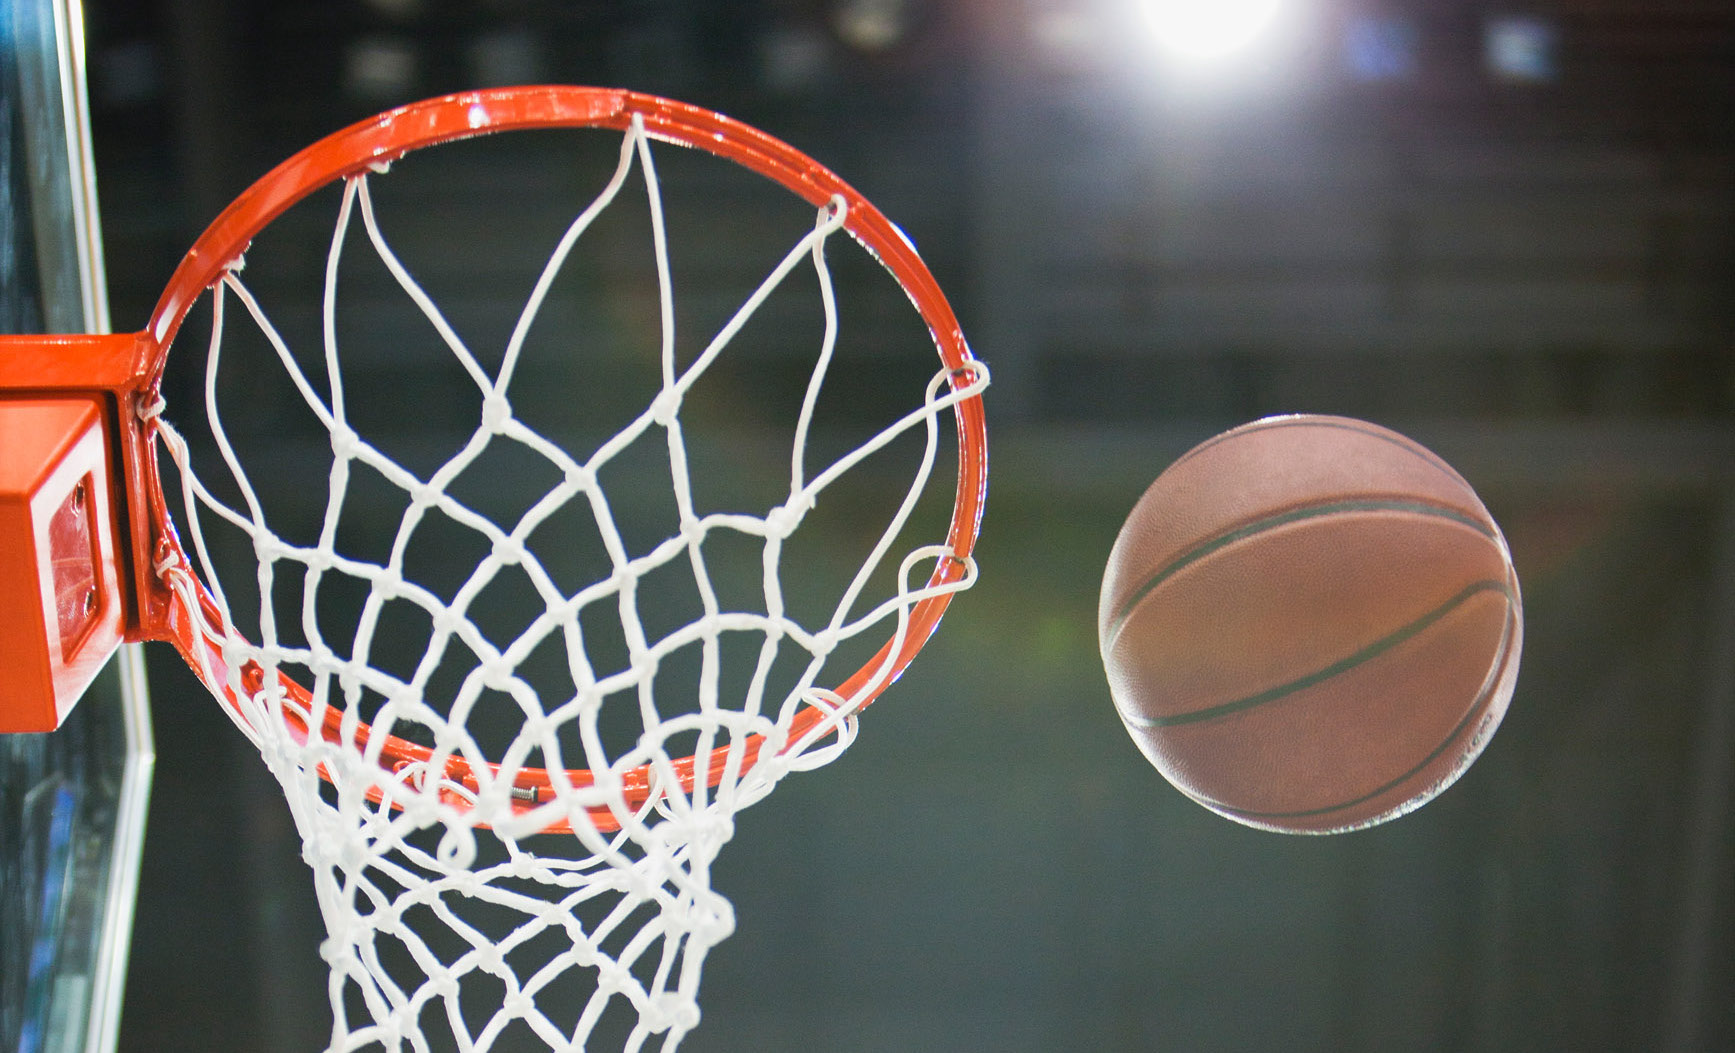 La Ligue Nationale de Basket suit la pérennité des clubs avec SAP